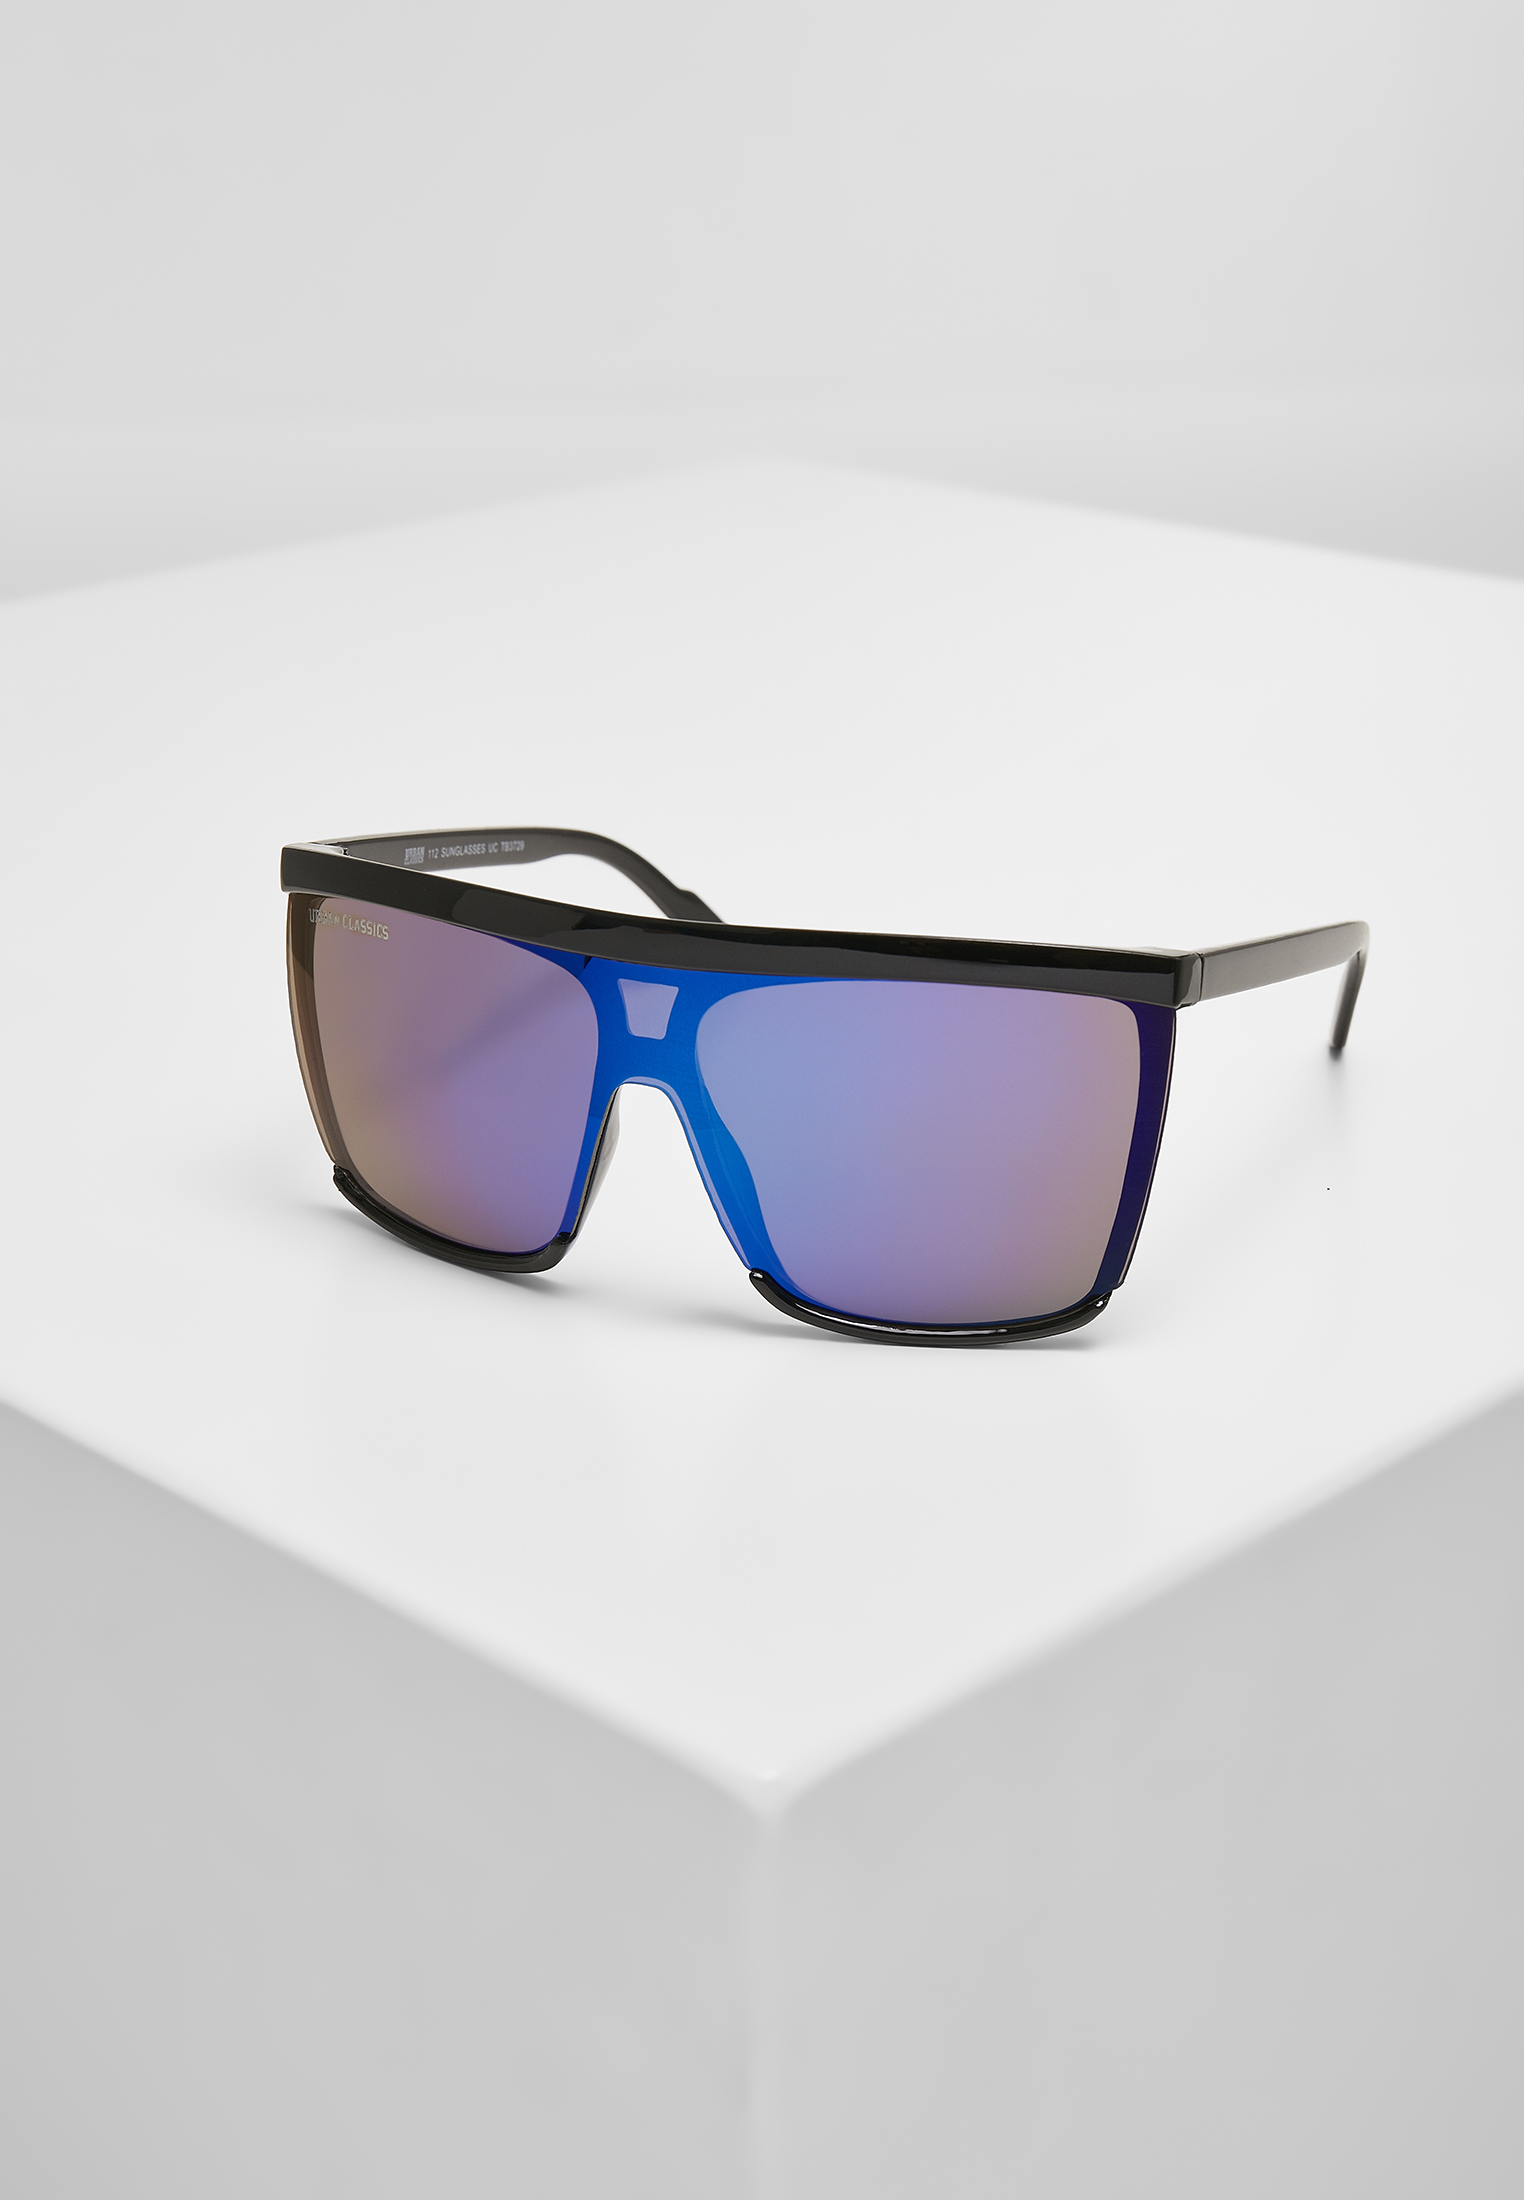 Sonnenbrillen 112 Sunglasses UC in Farbe black/multicolor